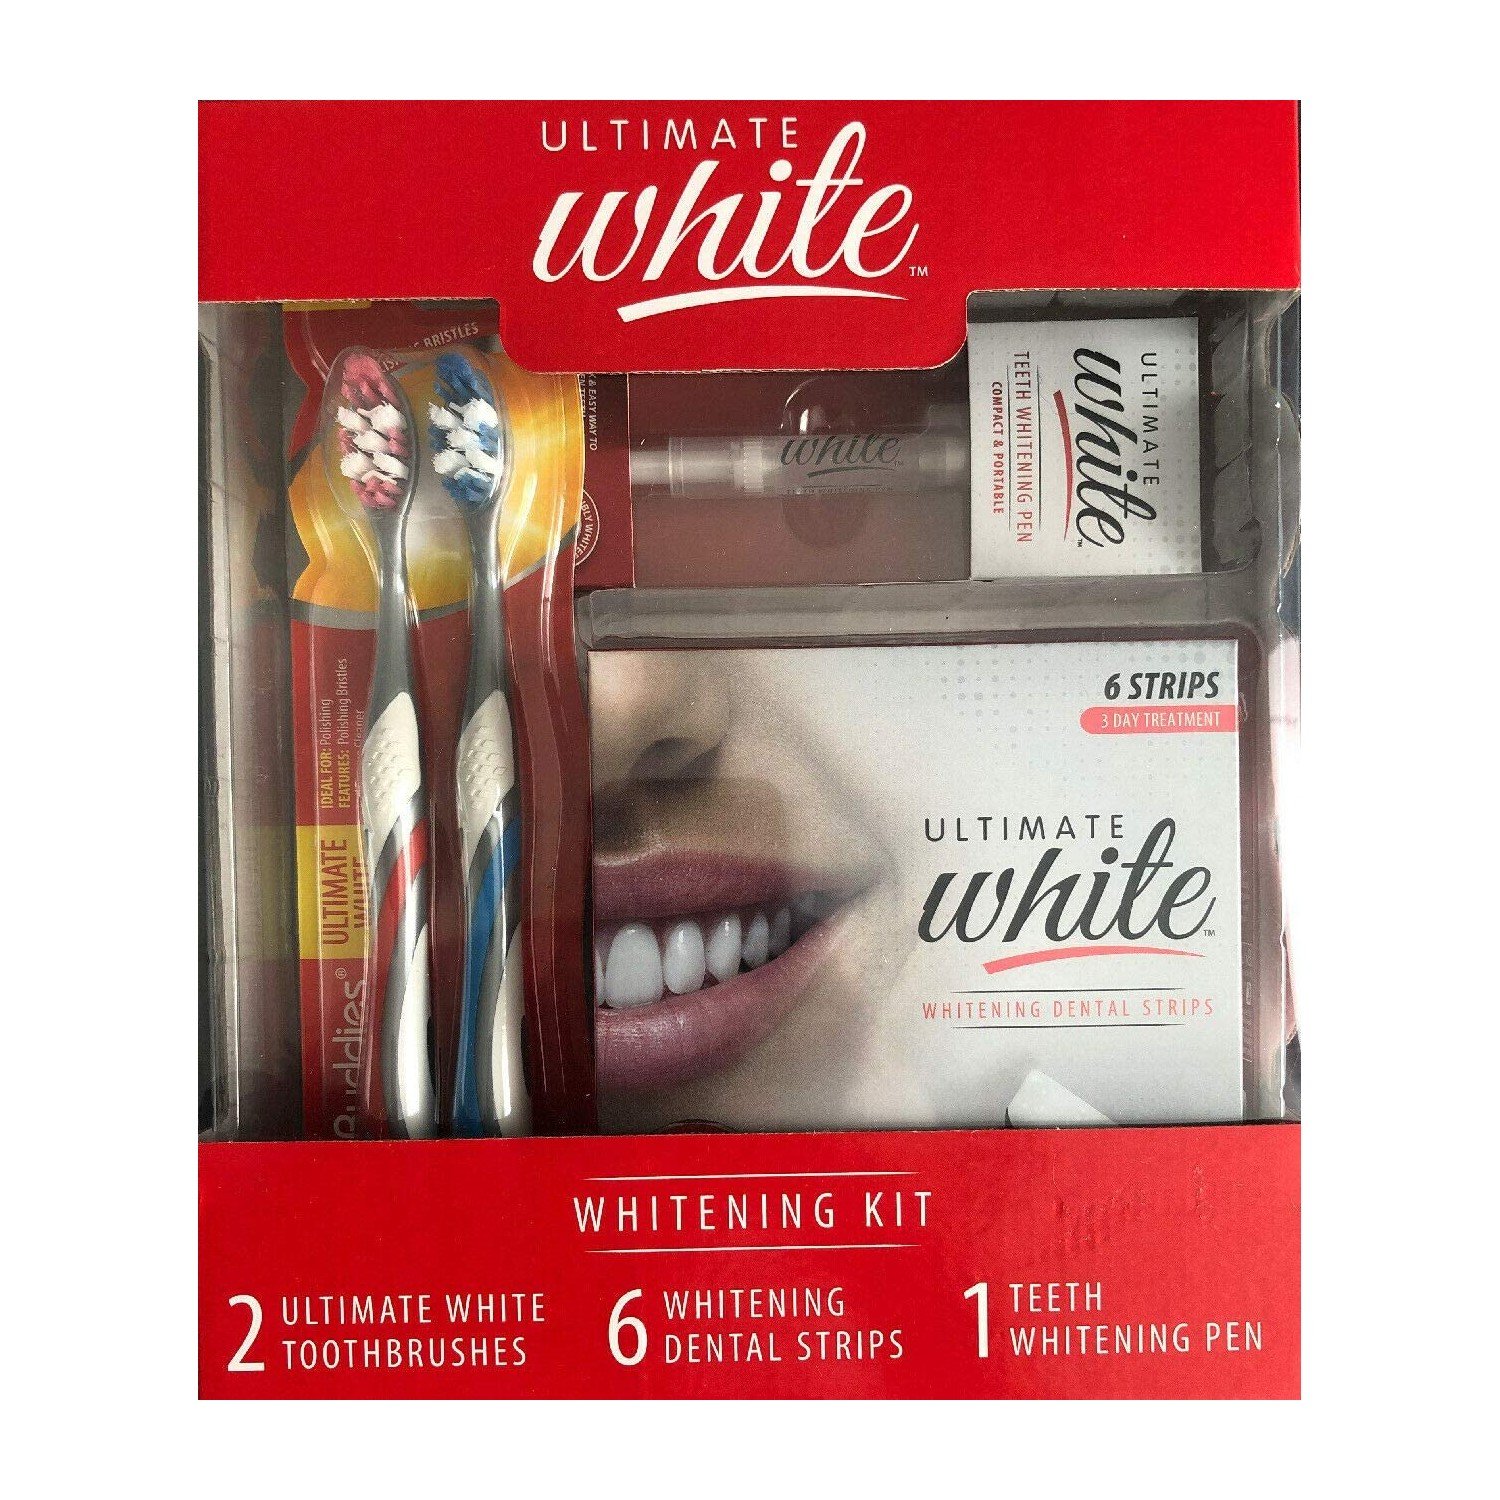 Ultimate White 9-Piece Whitening Kit Gift Set